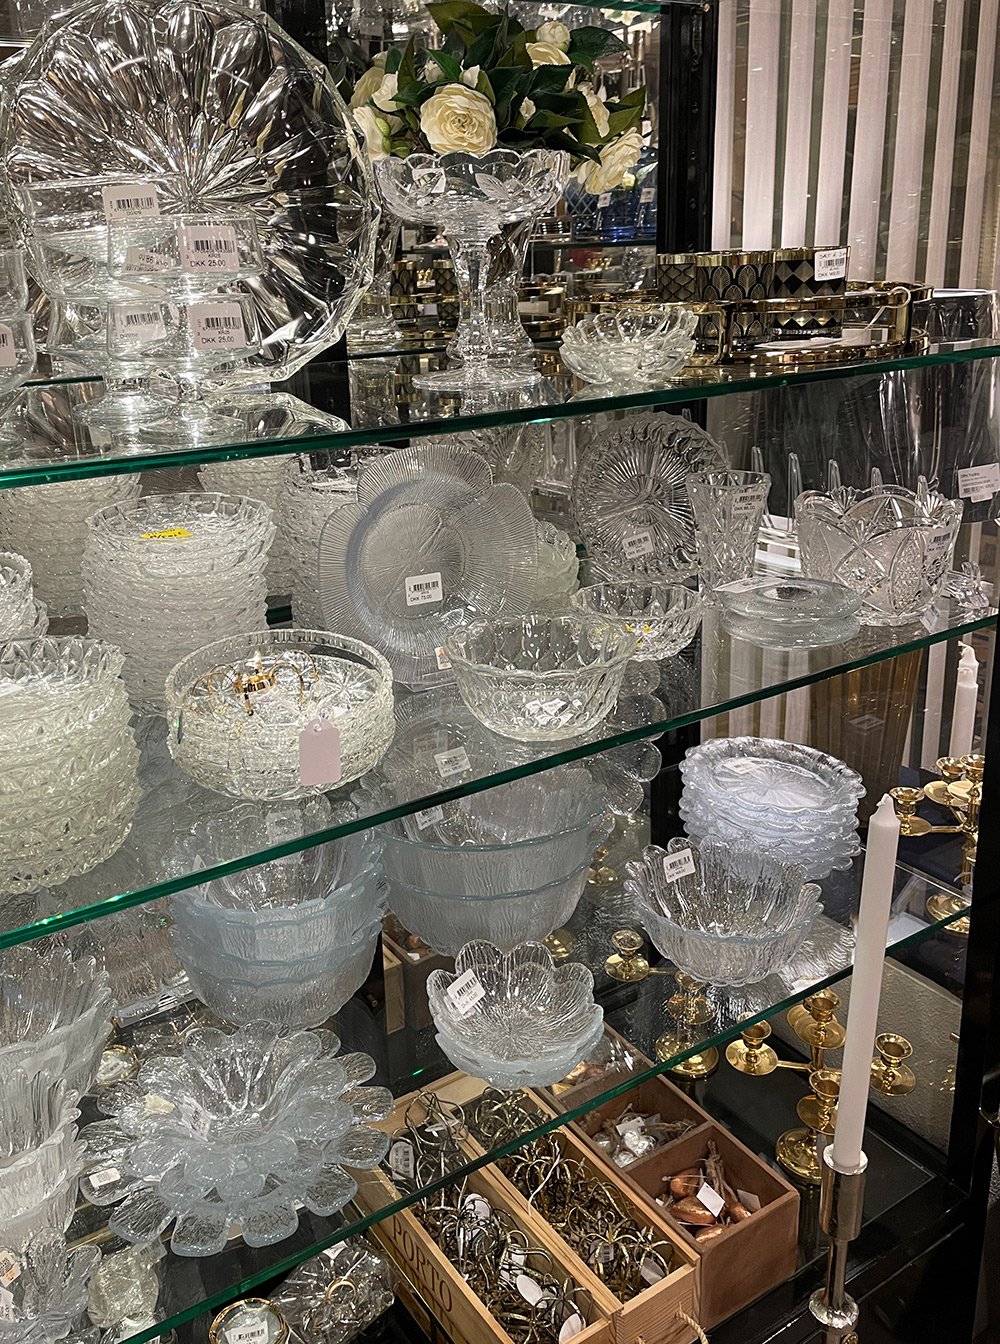 Krystal skåle kan findes i DPH Tradings butik